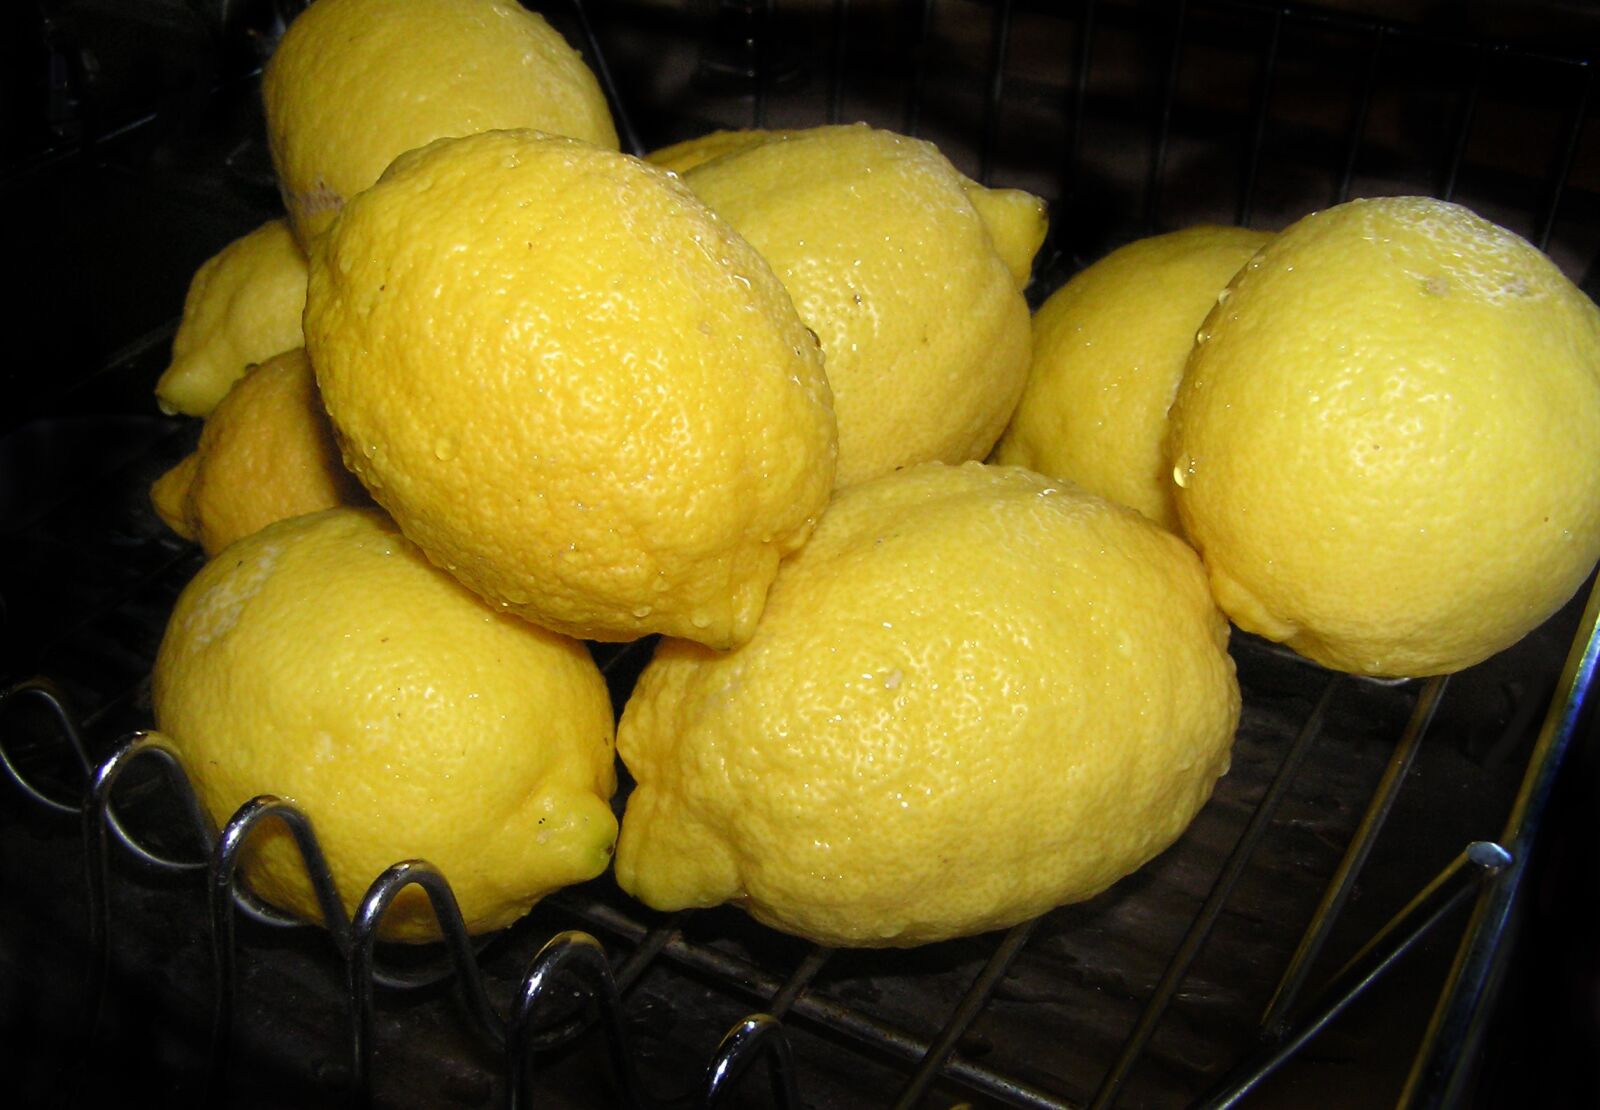 Olympus C750UZ sample photo. Lemons, citrus, fruit photography